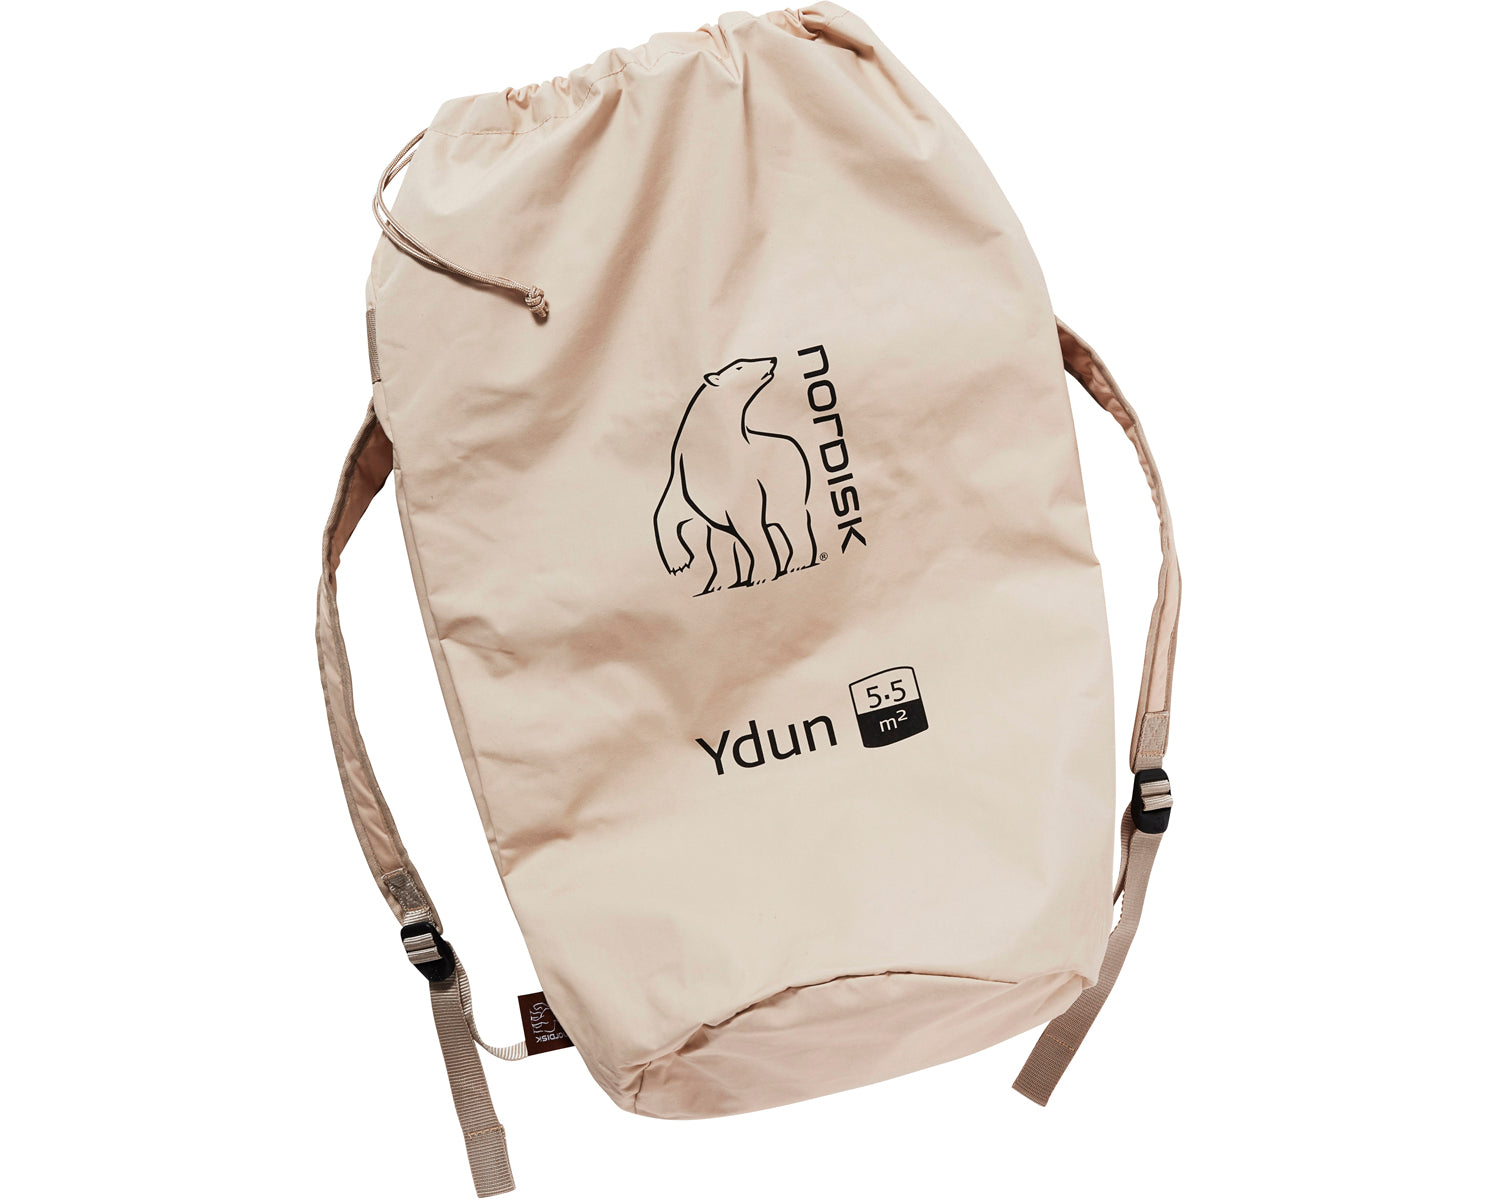 Packsack for Ydun 5.5 - Beige